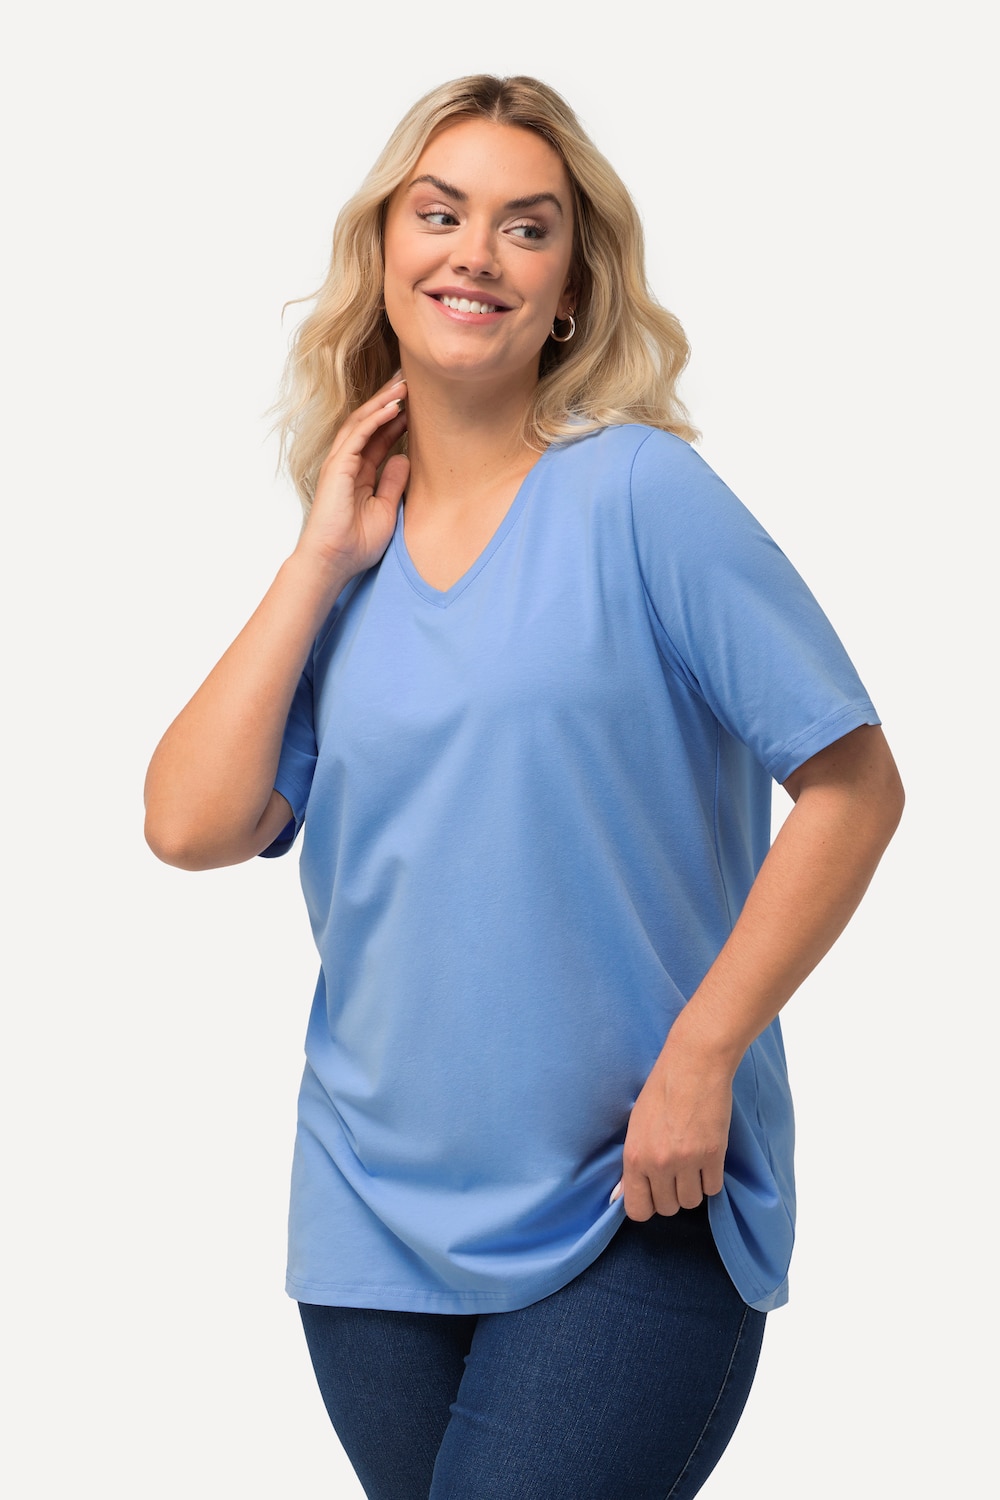 Grote Maten T-shirt, Dames, blauw, Maat: 58/60, Katoen, Ulla Popken